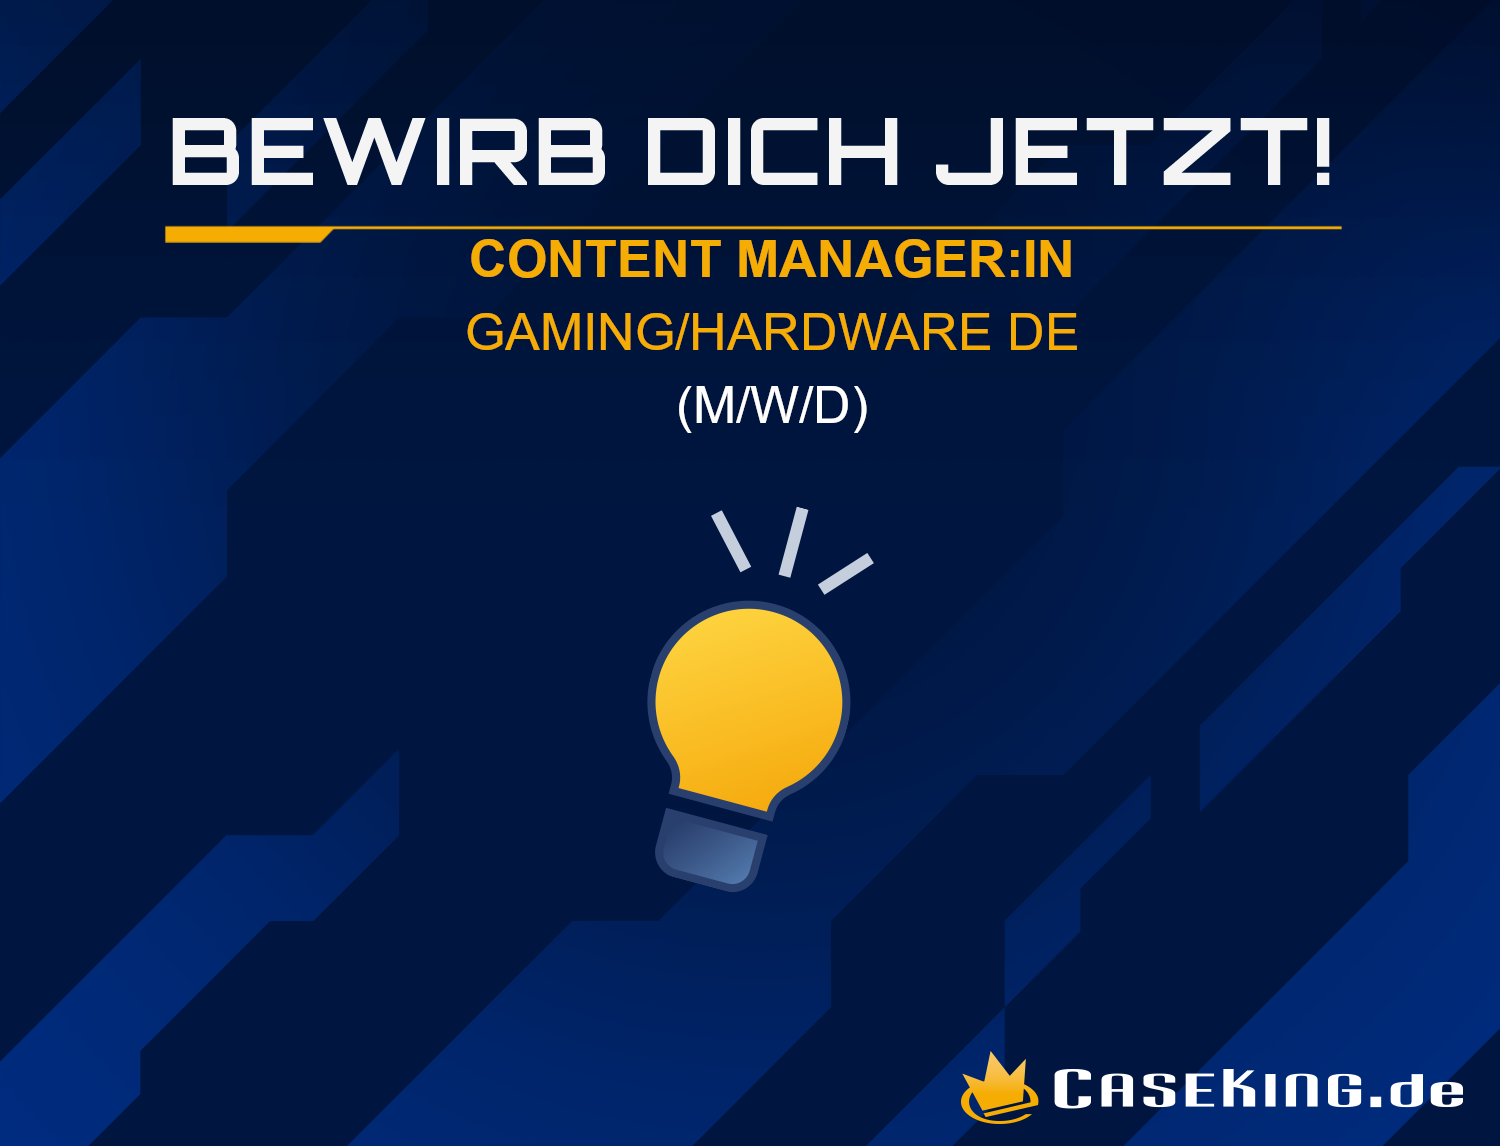 Caseking sucht Content Manager für Gaming/Hardware DE (m/w/d)